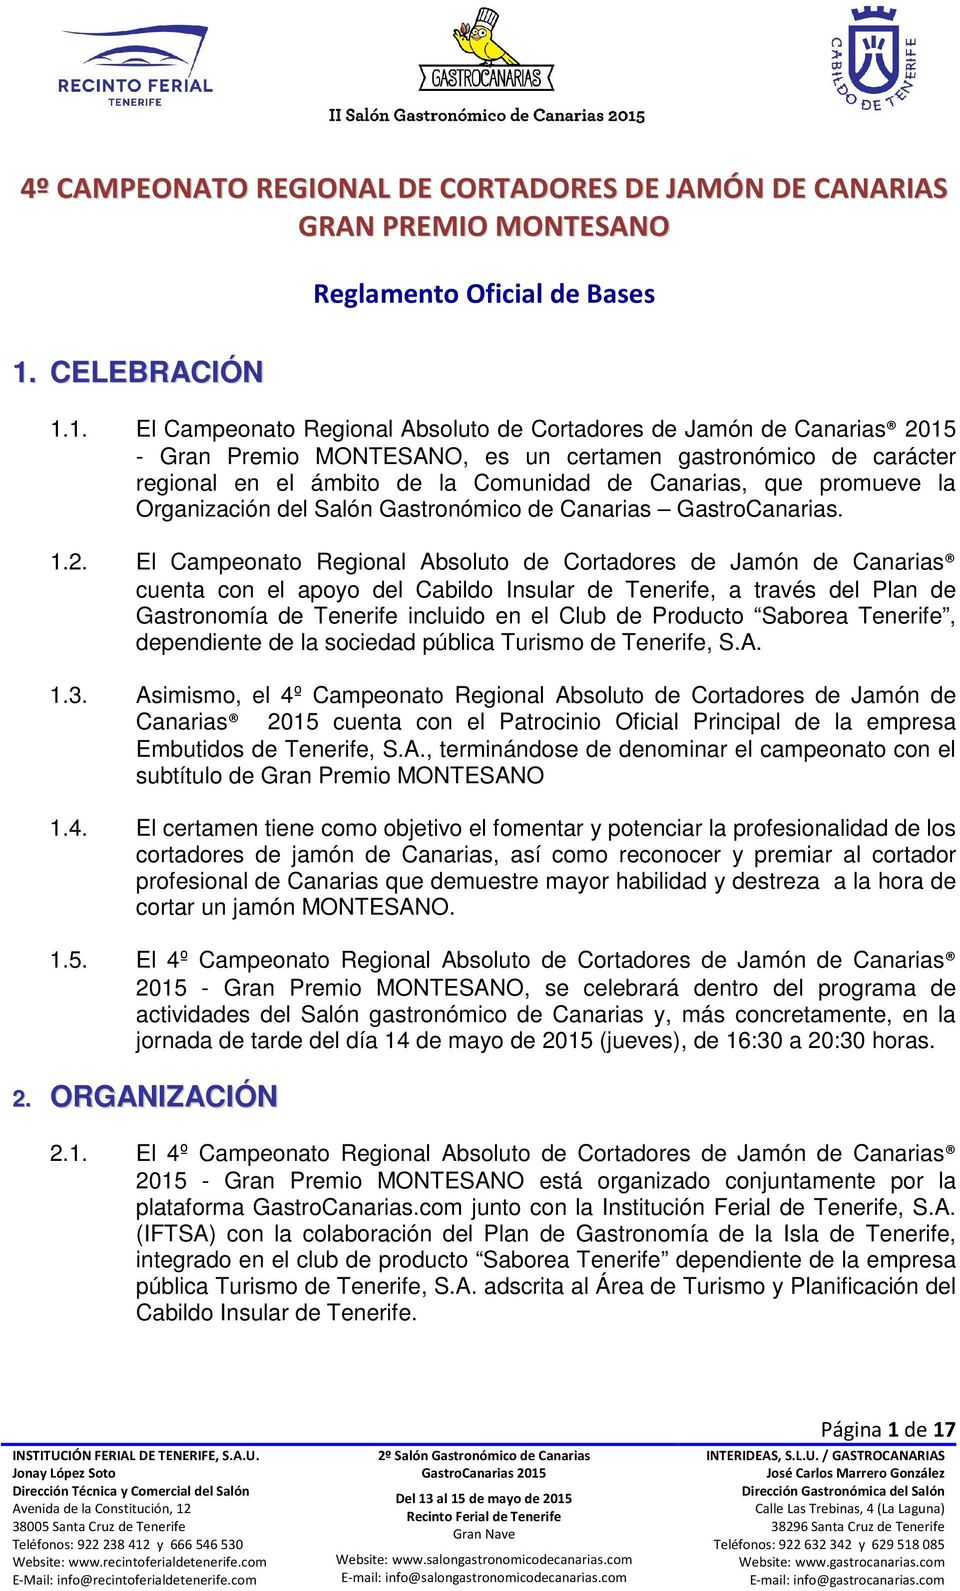 El Campeonato Regional Absoluto de Cortadores de Jamón de Canarias cuenta con el apoyo del Cabildo Insular de Tenerife, a través del Plan de Gastronomía de Tenerife incluido en el Club de Producto